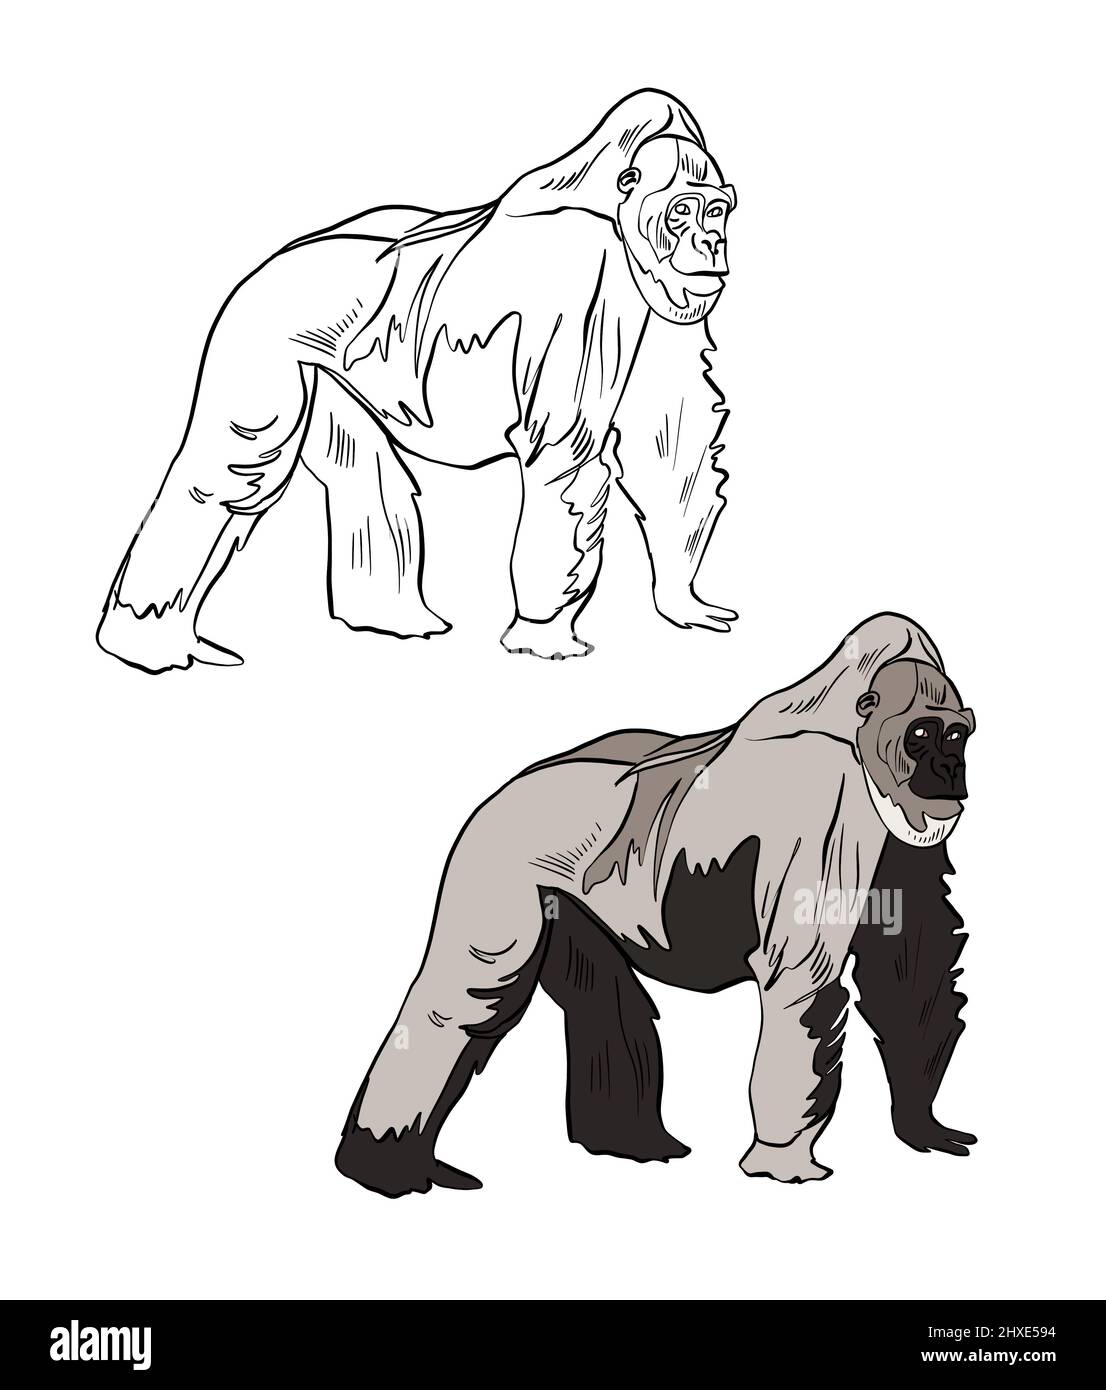 Illustration d'un livre de coloriage en couleur et en noir et blanc. Dessin d'un singe gorille sur fond blanc isolé. Illustration de haute qualité Banque D'Images